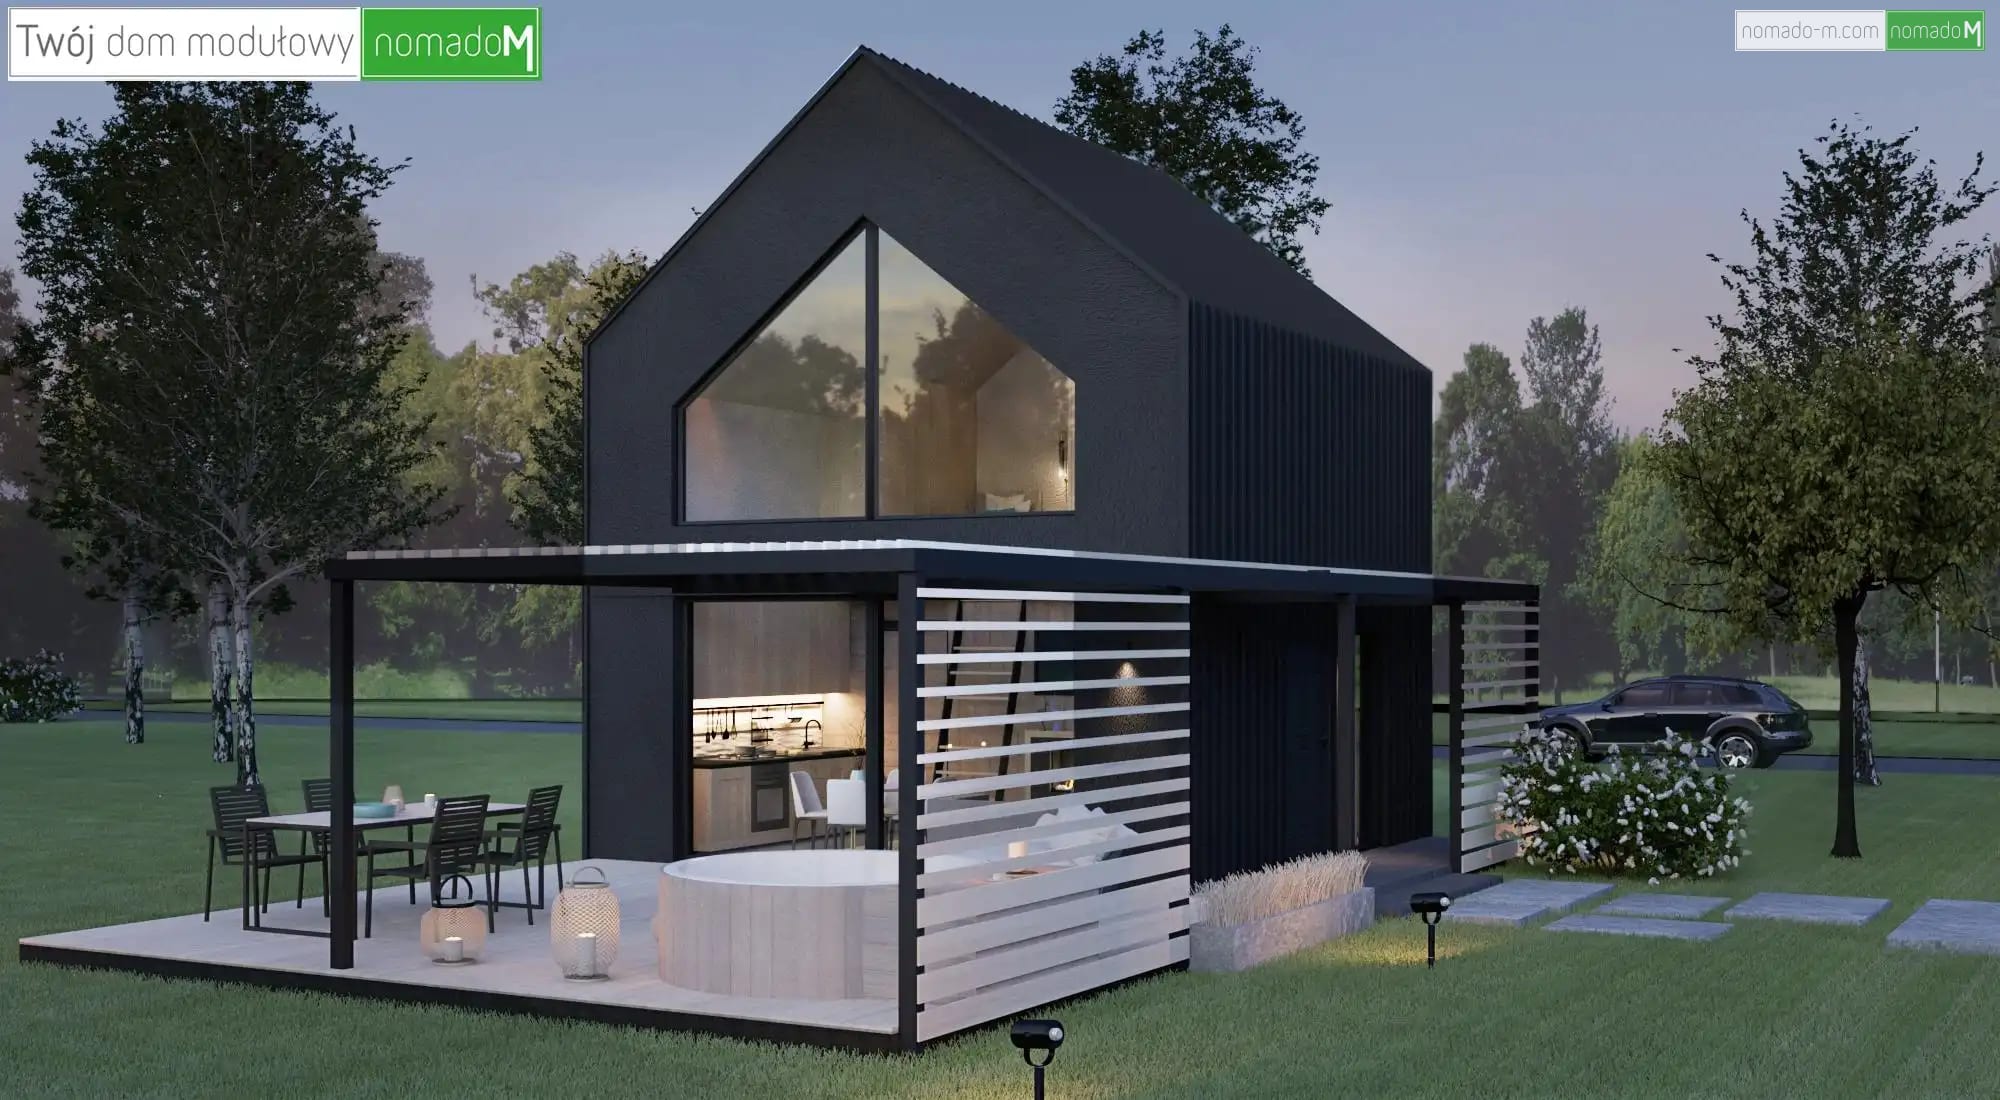 nM TECHO - domy modułowe - Dom całoroczny do 35 m2 to pomysł na ciekawą bryłę domu z tarasem i pergolą 